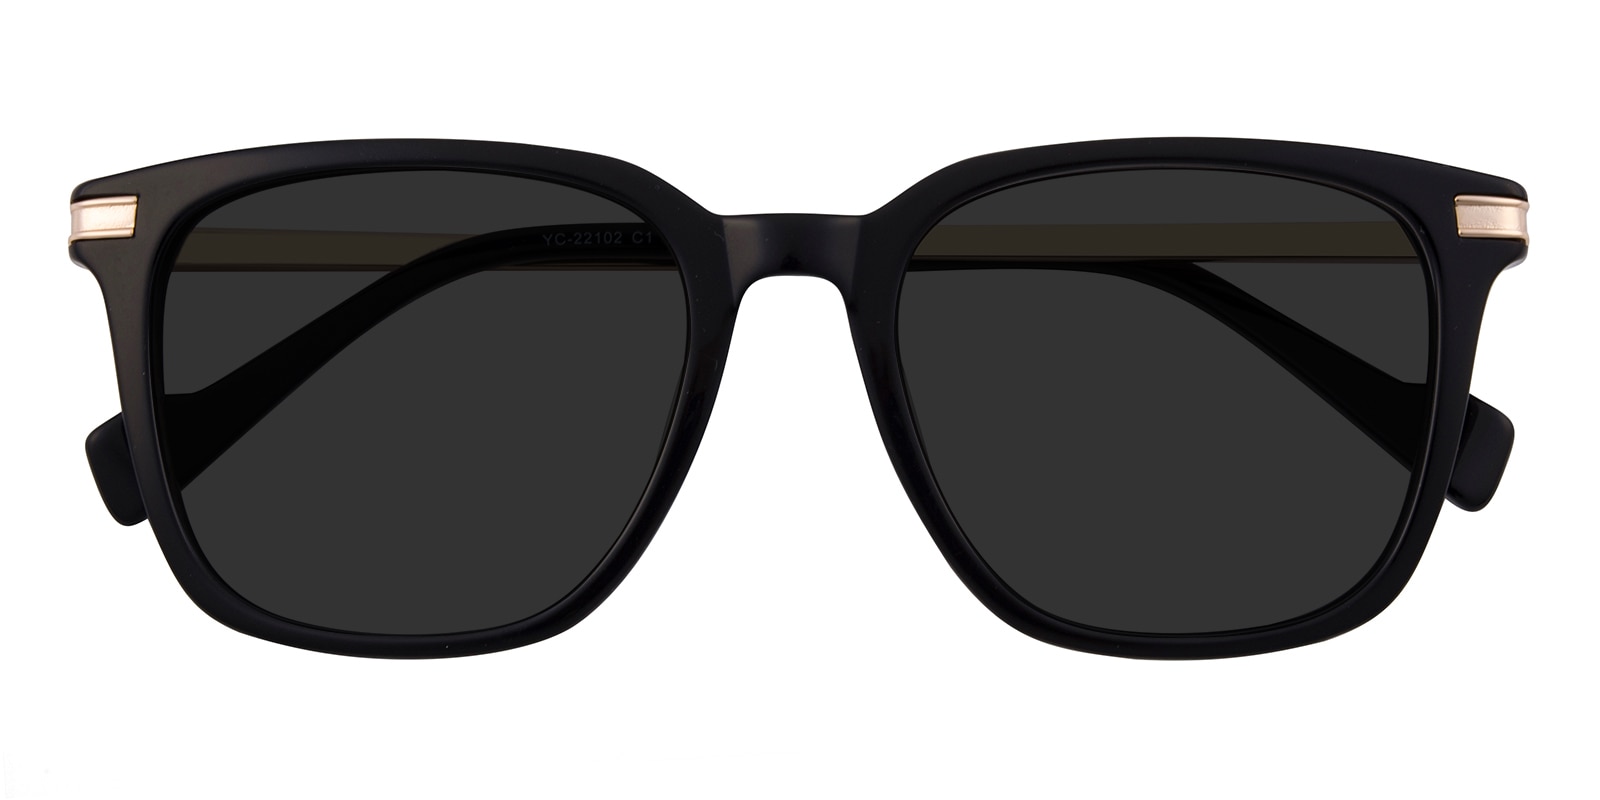 Square Sunglasses, Full Frame Black/Golden Plastic - SUP1256